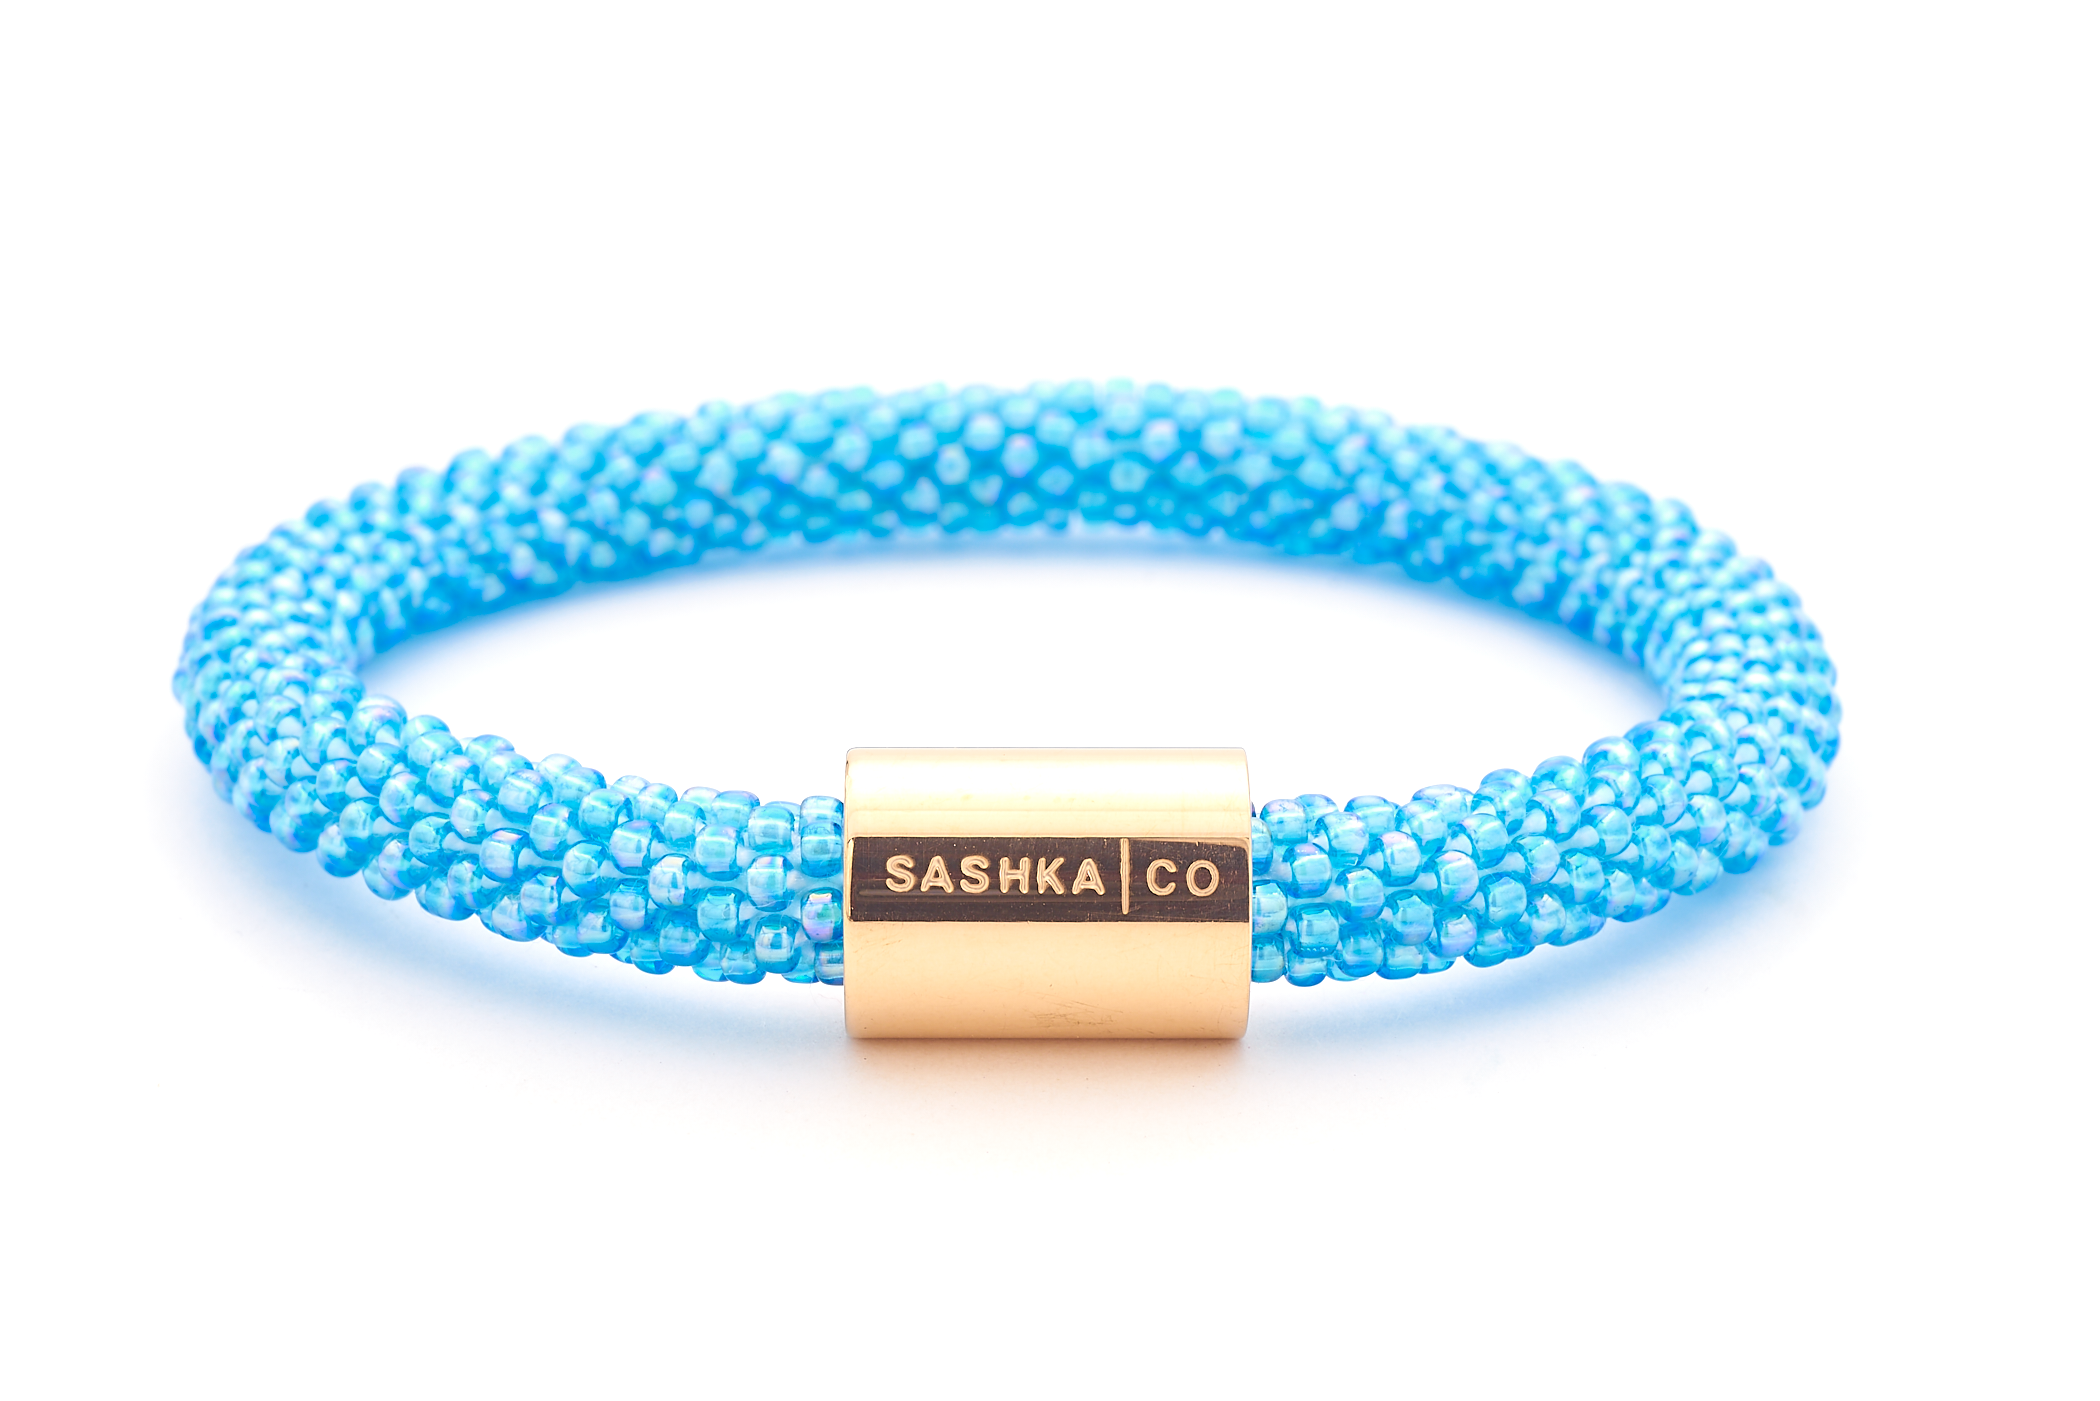 Sashka Co. Original Bracelet none upload